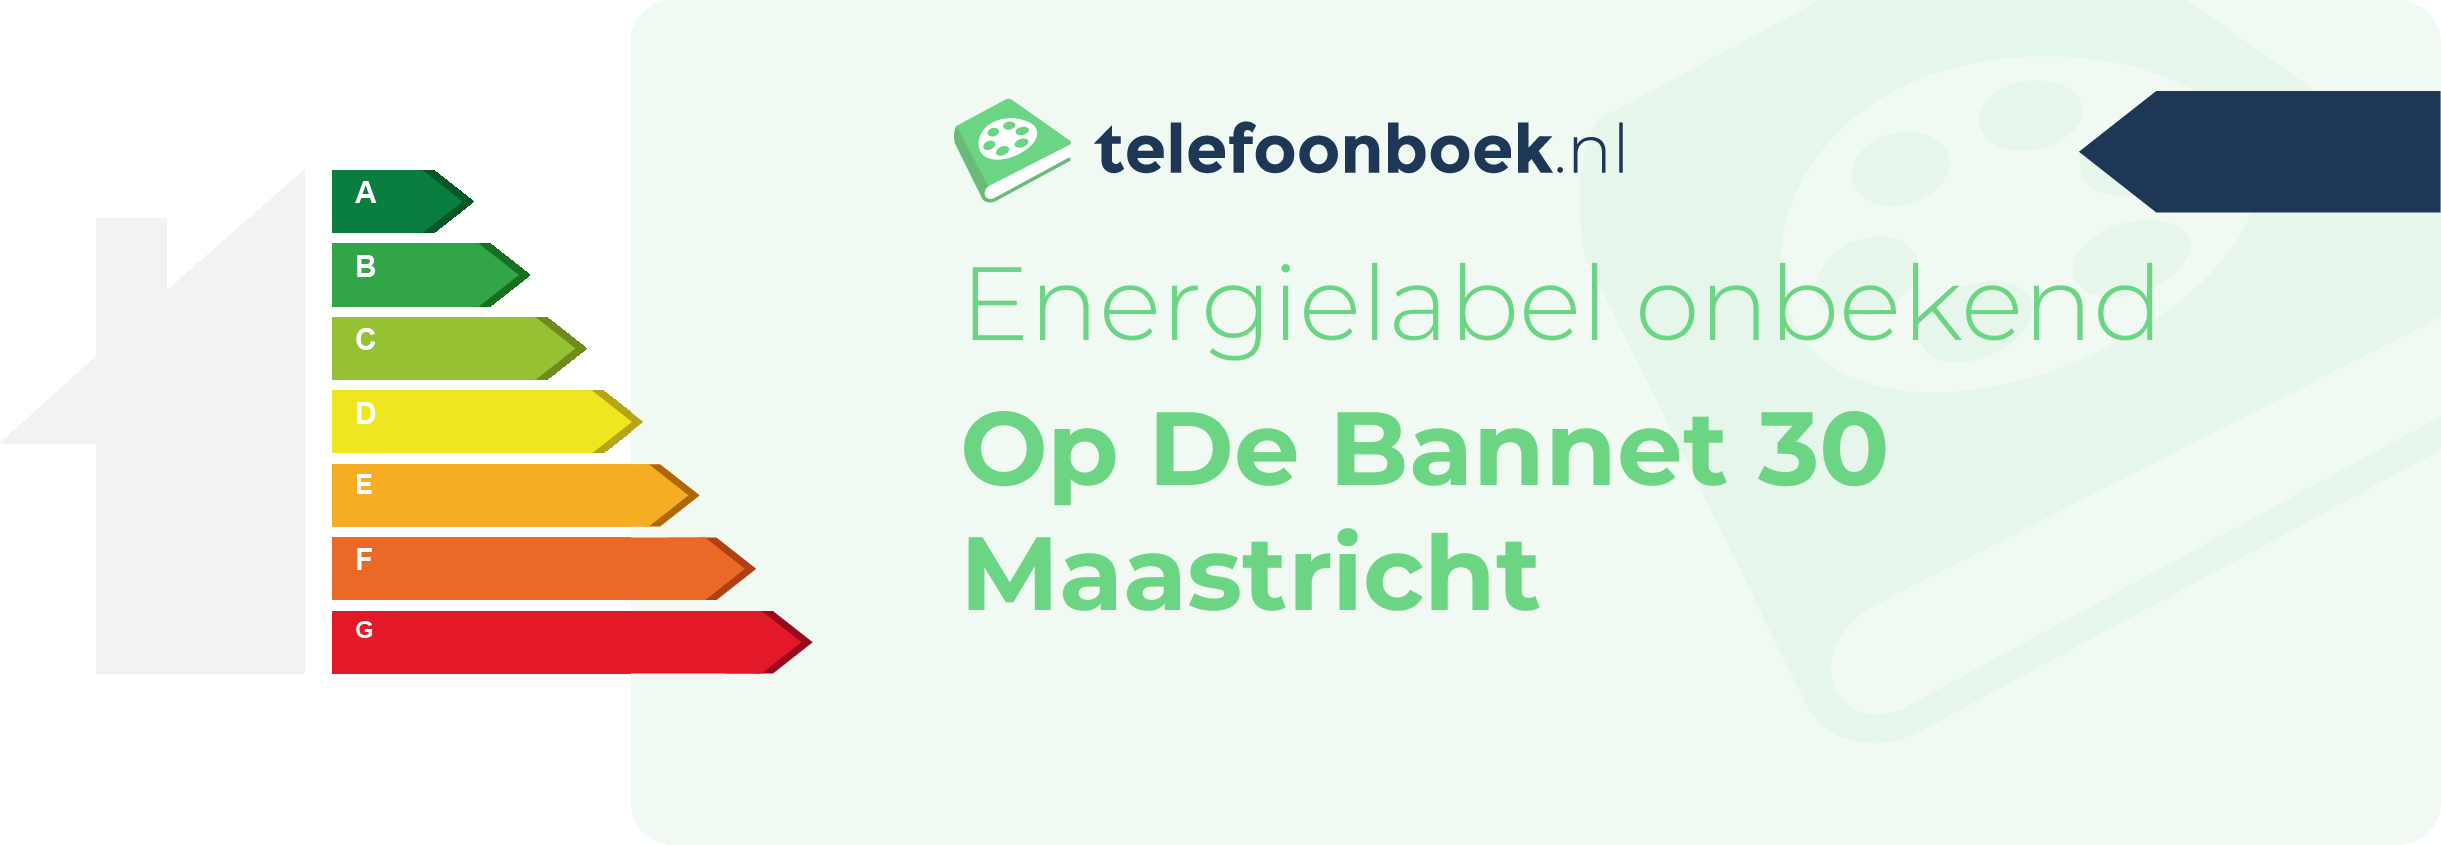 Energielabel Op De Bannet 30 Maastricht